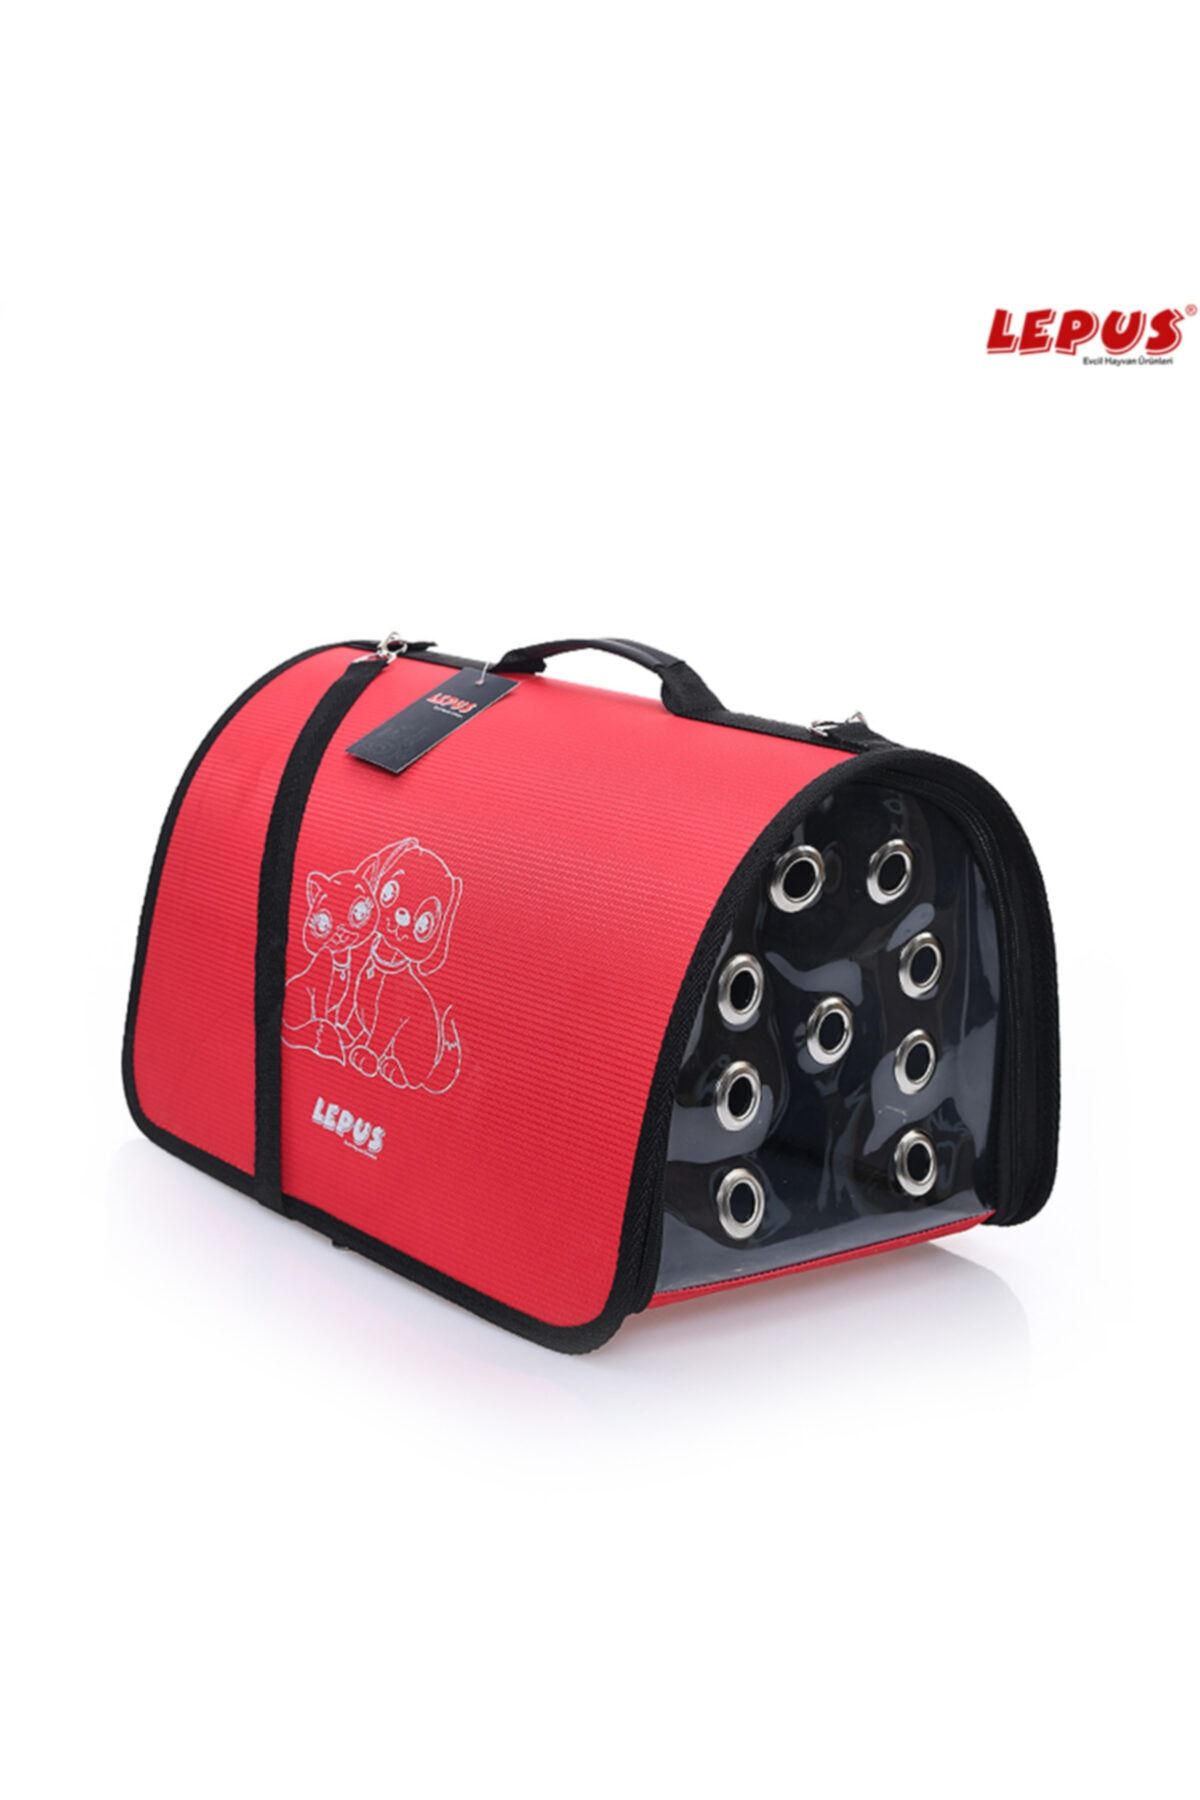 Lepus Fly Bag Çanta - (UÇAK KABİN BOY) Kırmızı